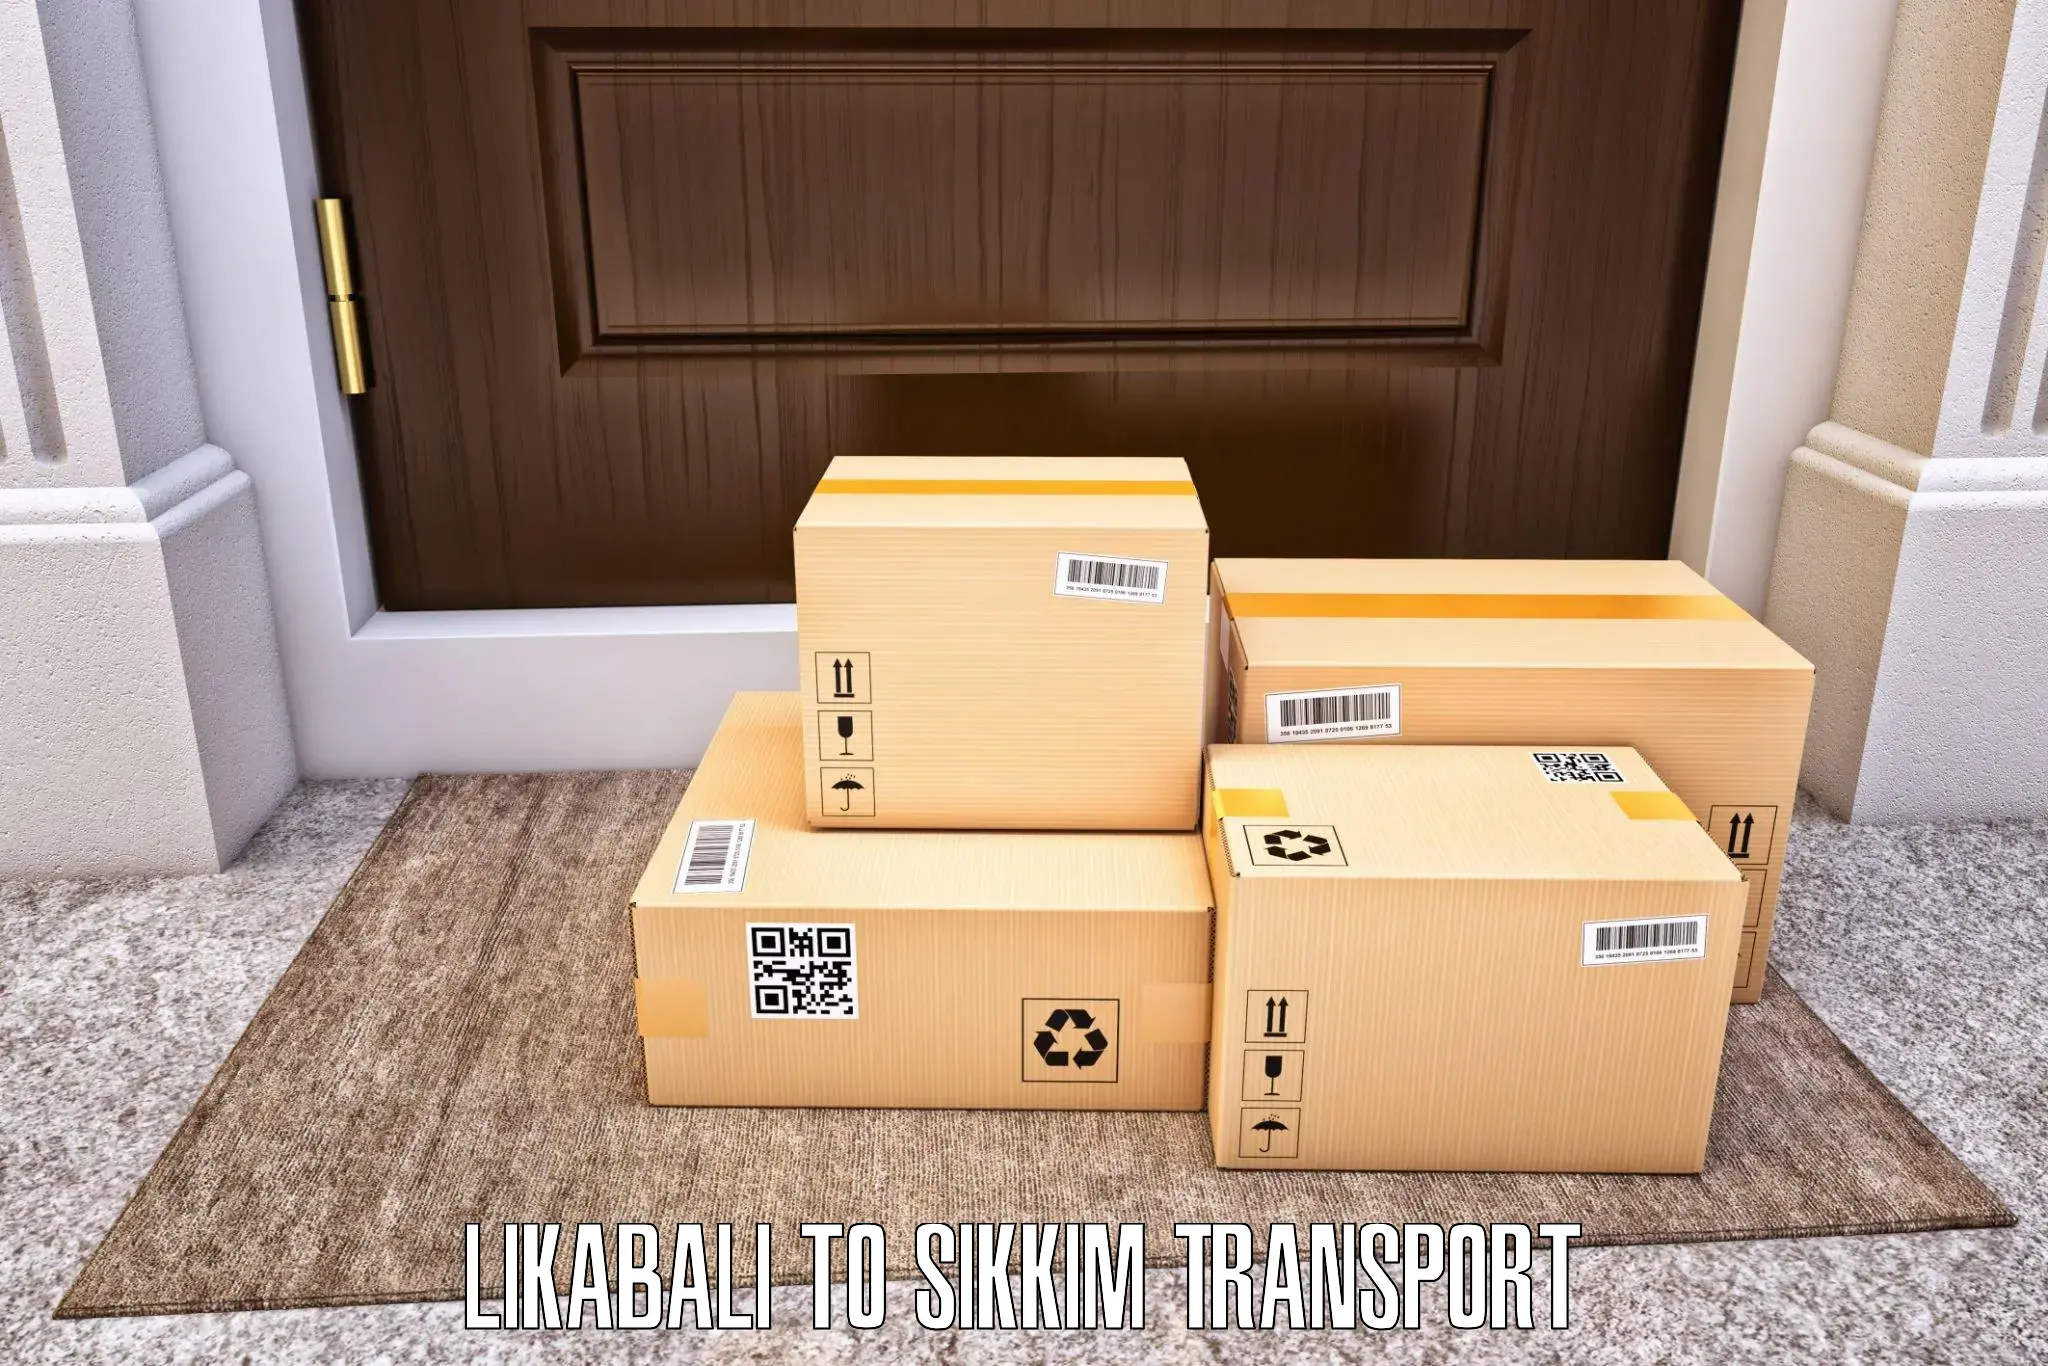 Shipping partner Likabali to Rongli